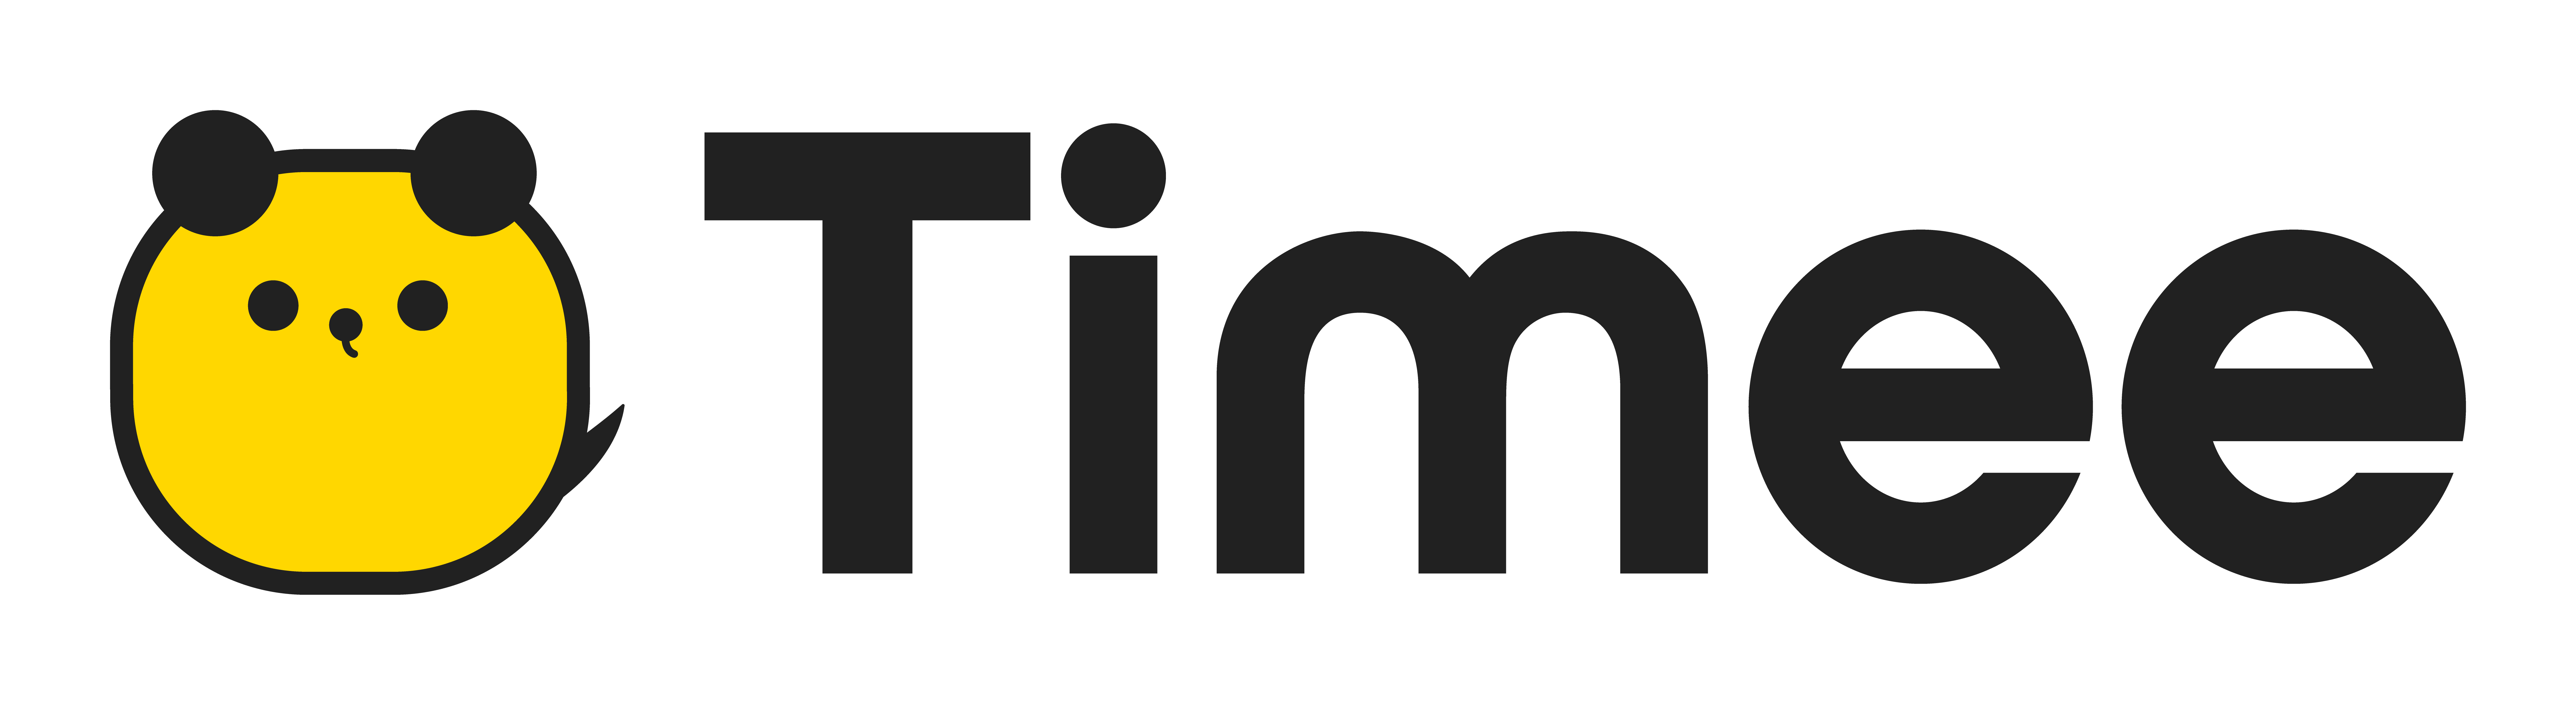 timee_logo_styles_digital_Timee_logo_align_RGB.png